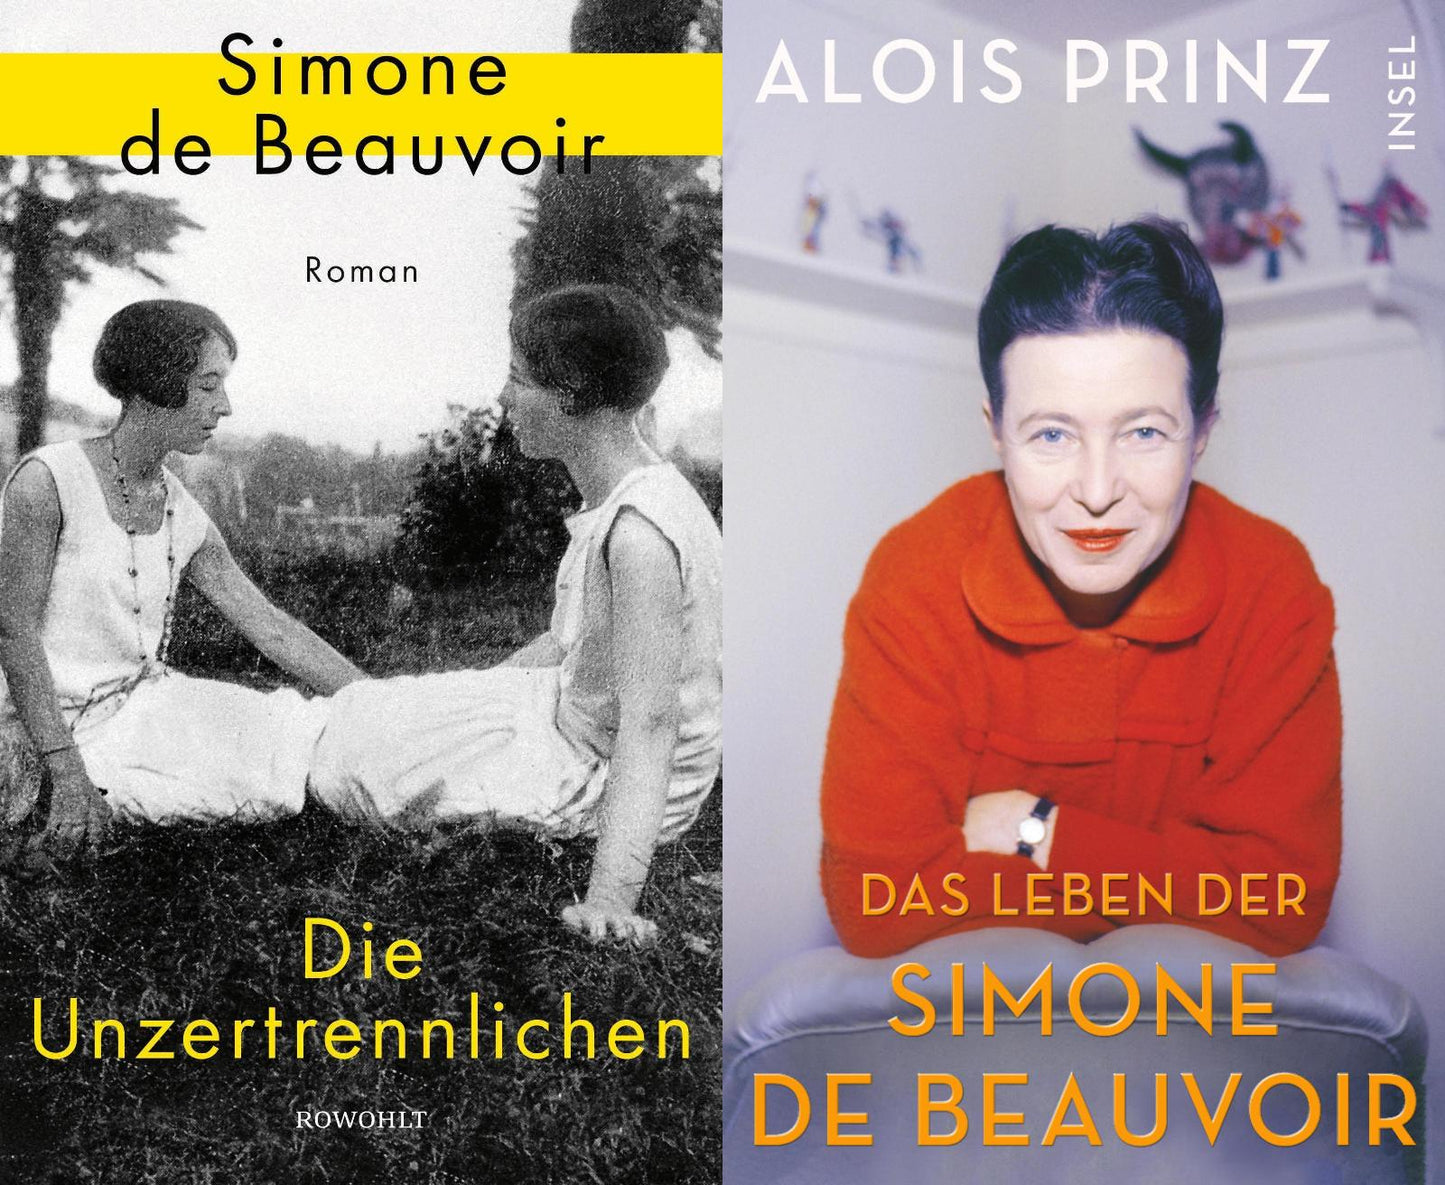 Die Unzertrennlichen + Die Lebensgeschichte der Simone de Beauvoir + 1 exklusives Postkartenset